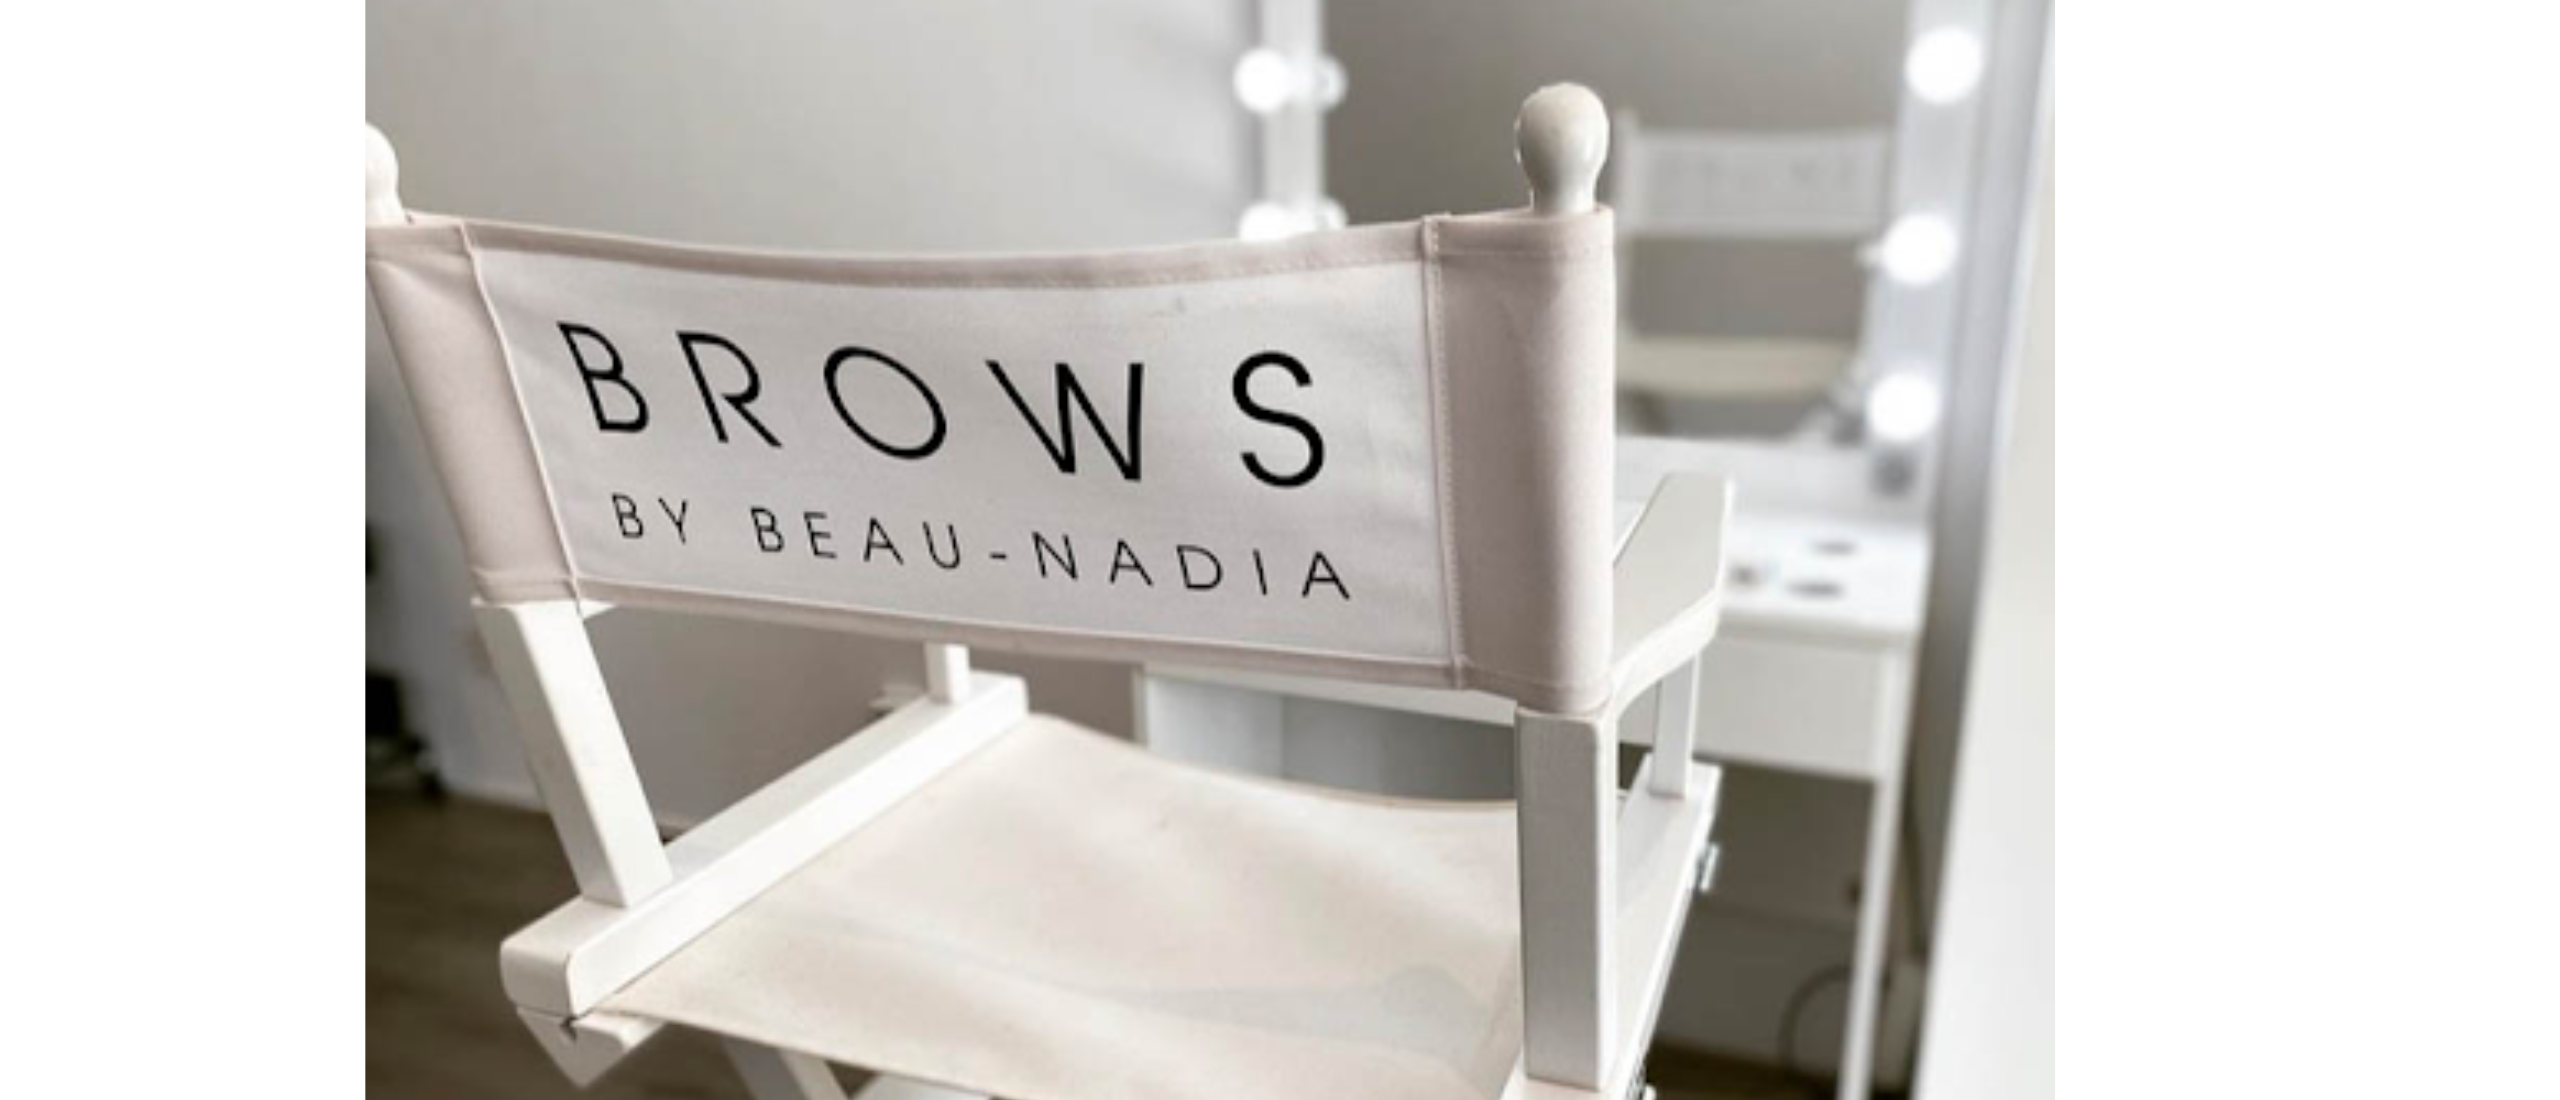 Perfecte wenkbrauwen bij Brows by Beau Nadia: specialist in permanente pake-up en henna brows